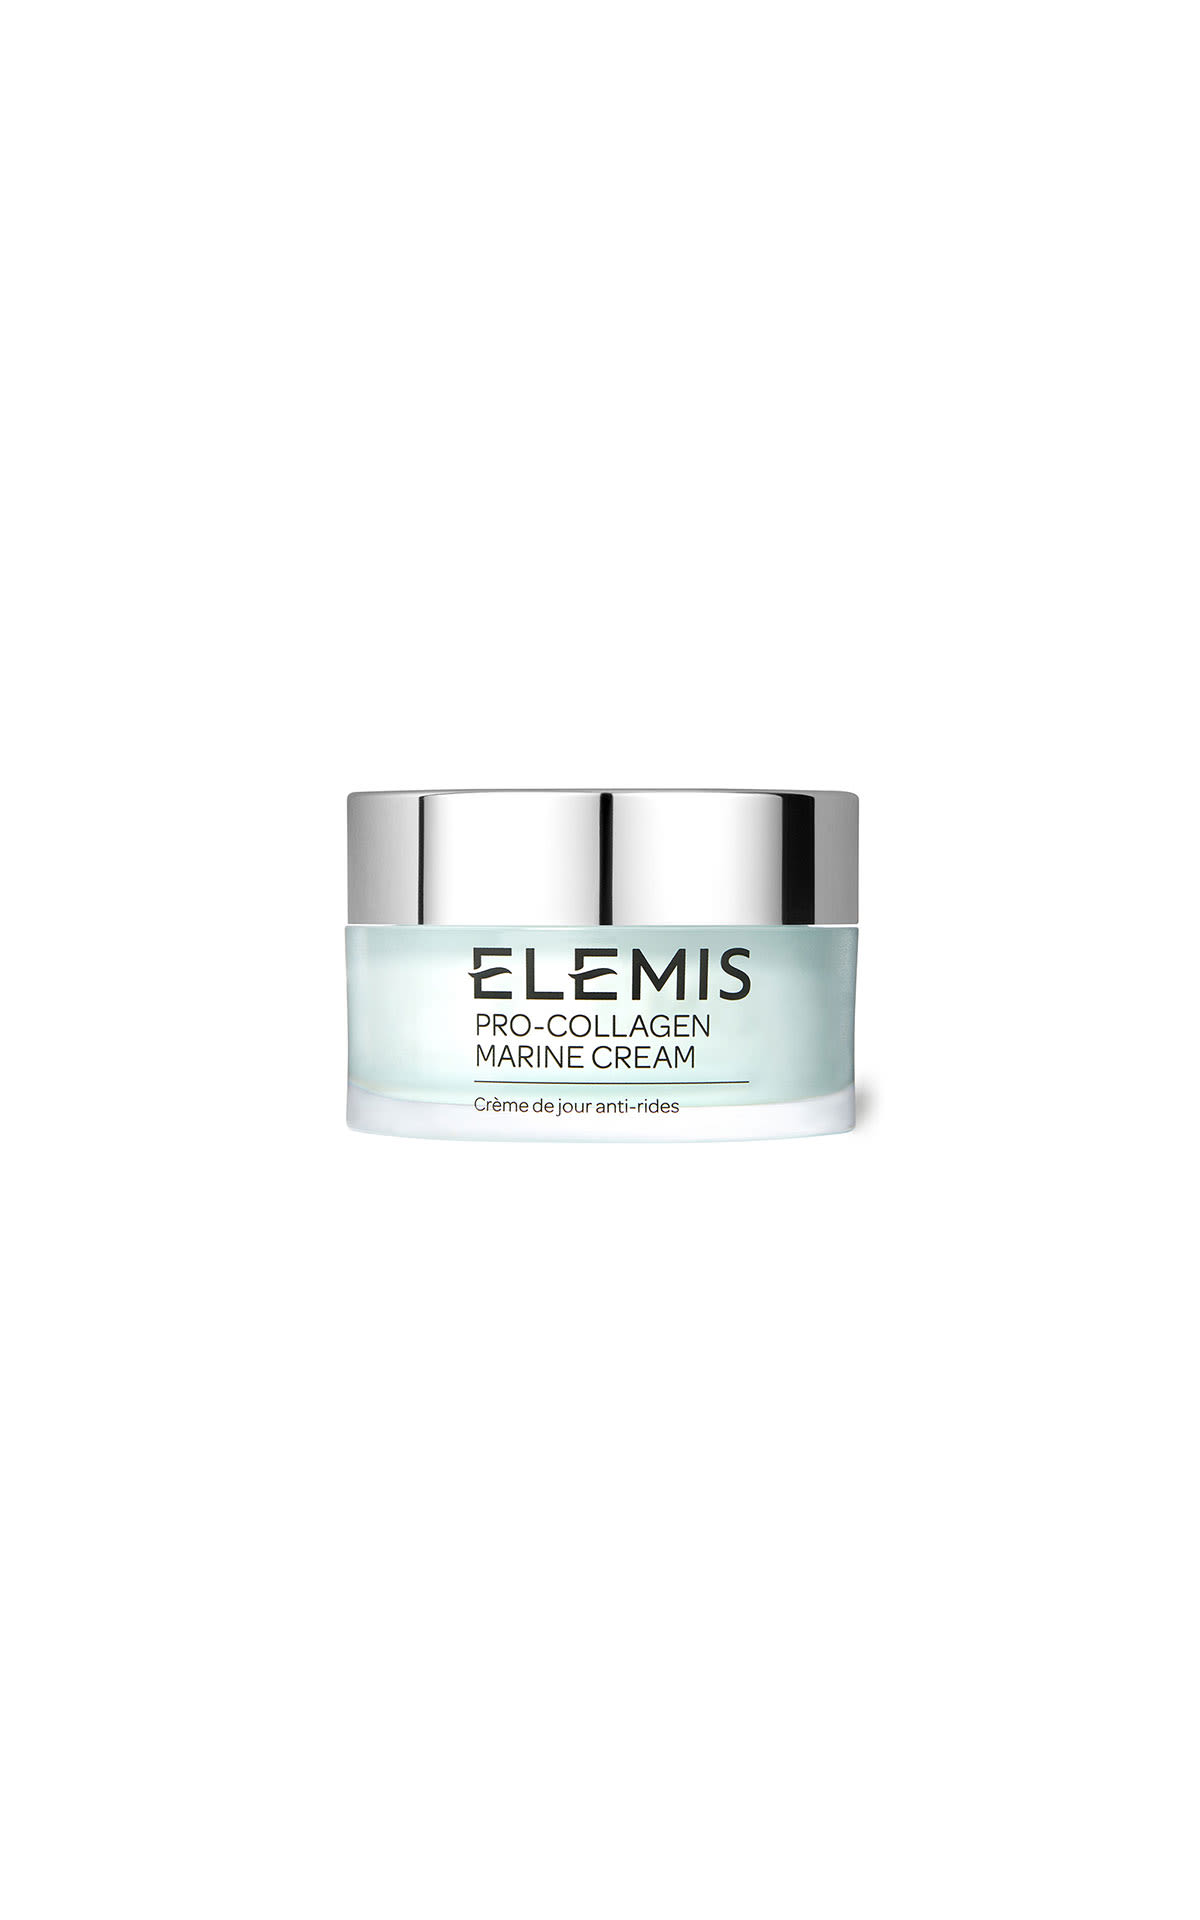 ELEMIS Pro-Collagen marine cream 50ml from Bicester Village